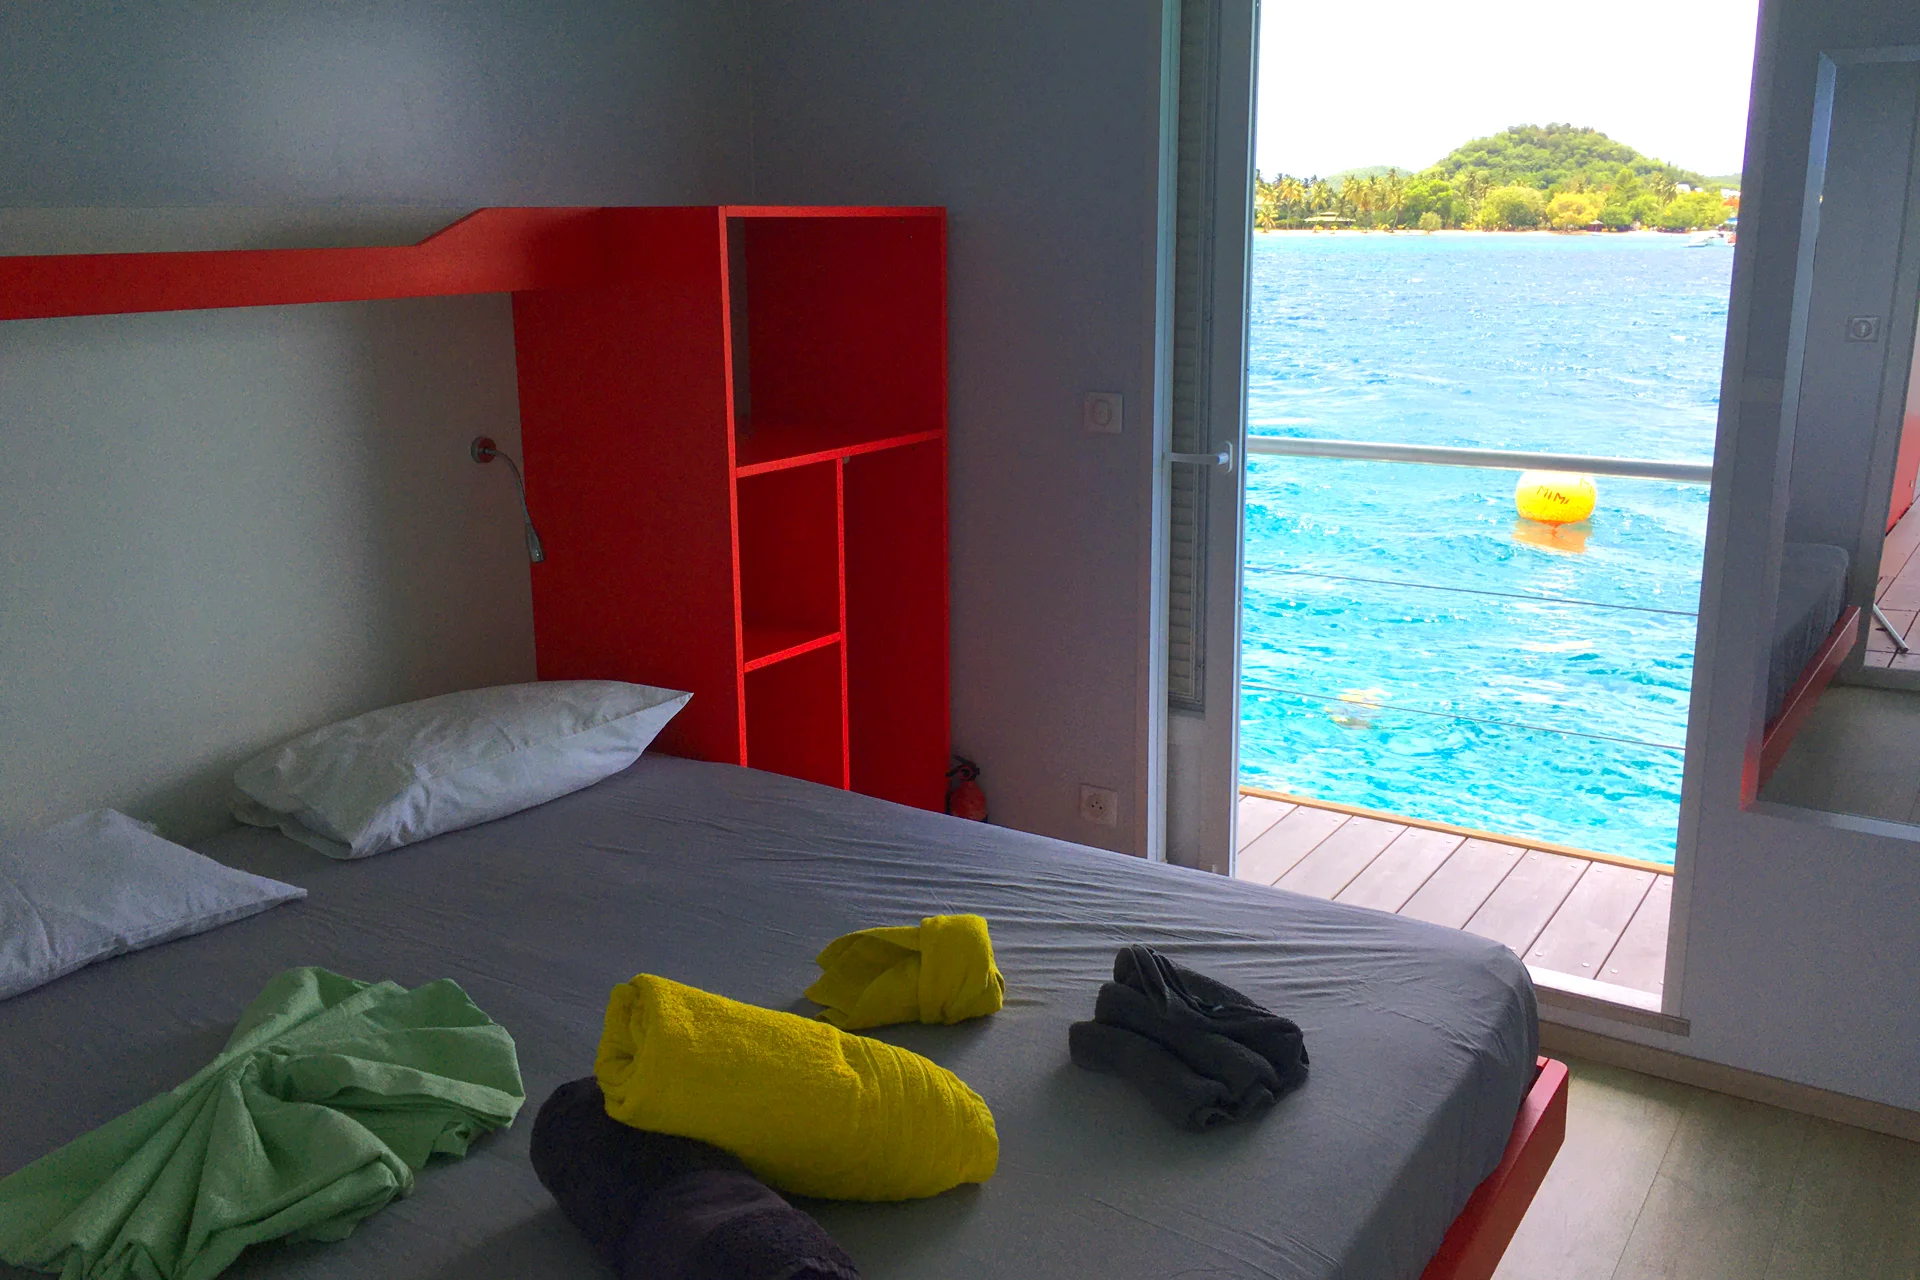 Aqualodge drijvende villa slaapkamer jachtcharter